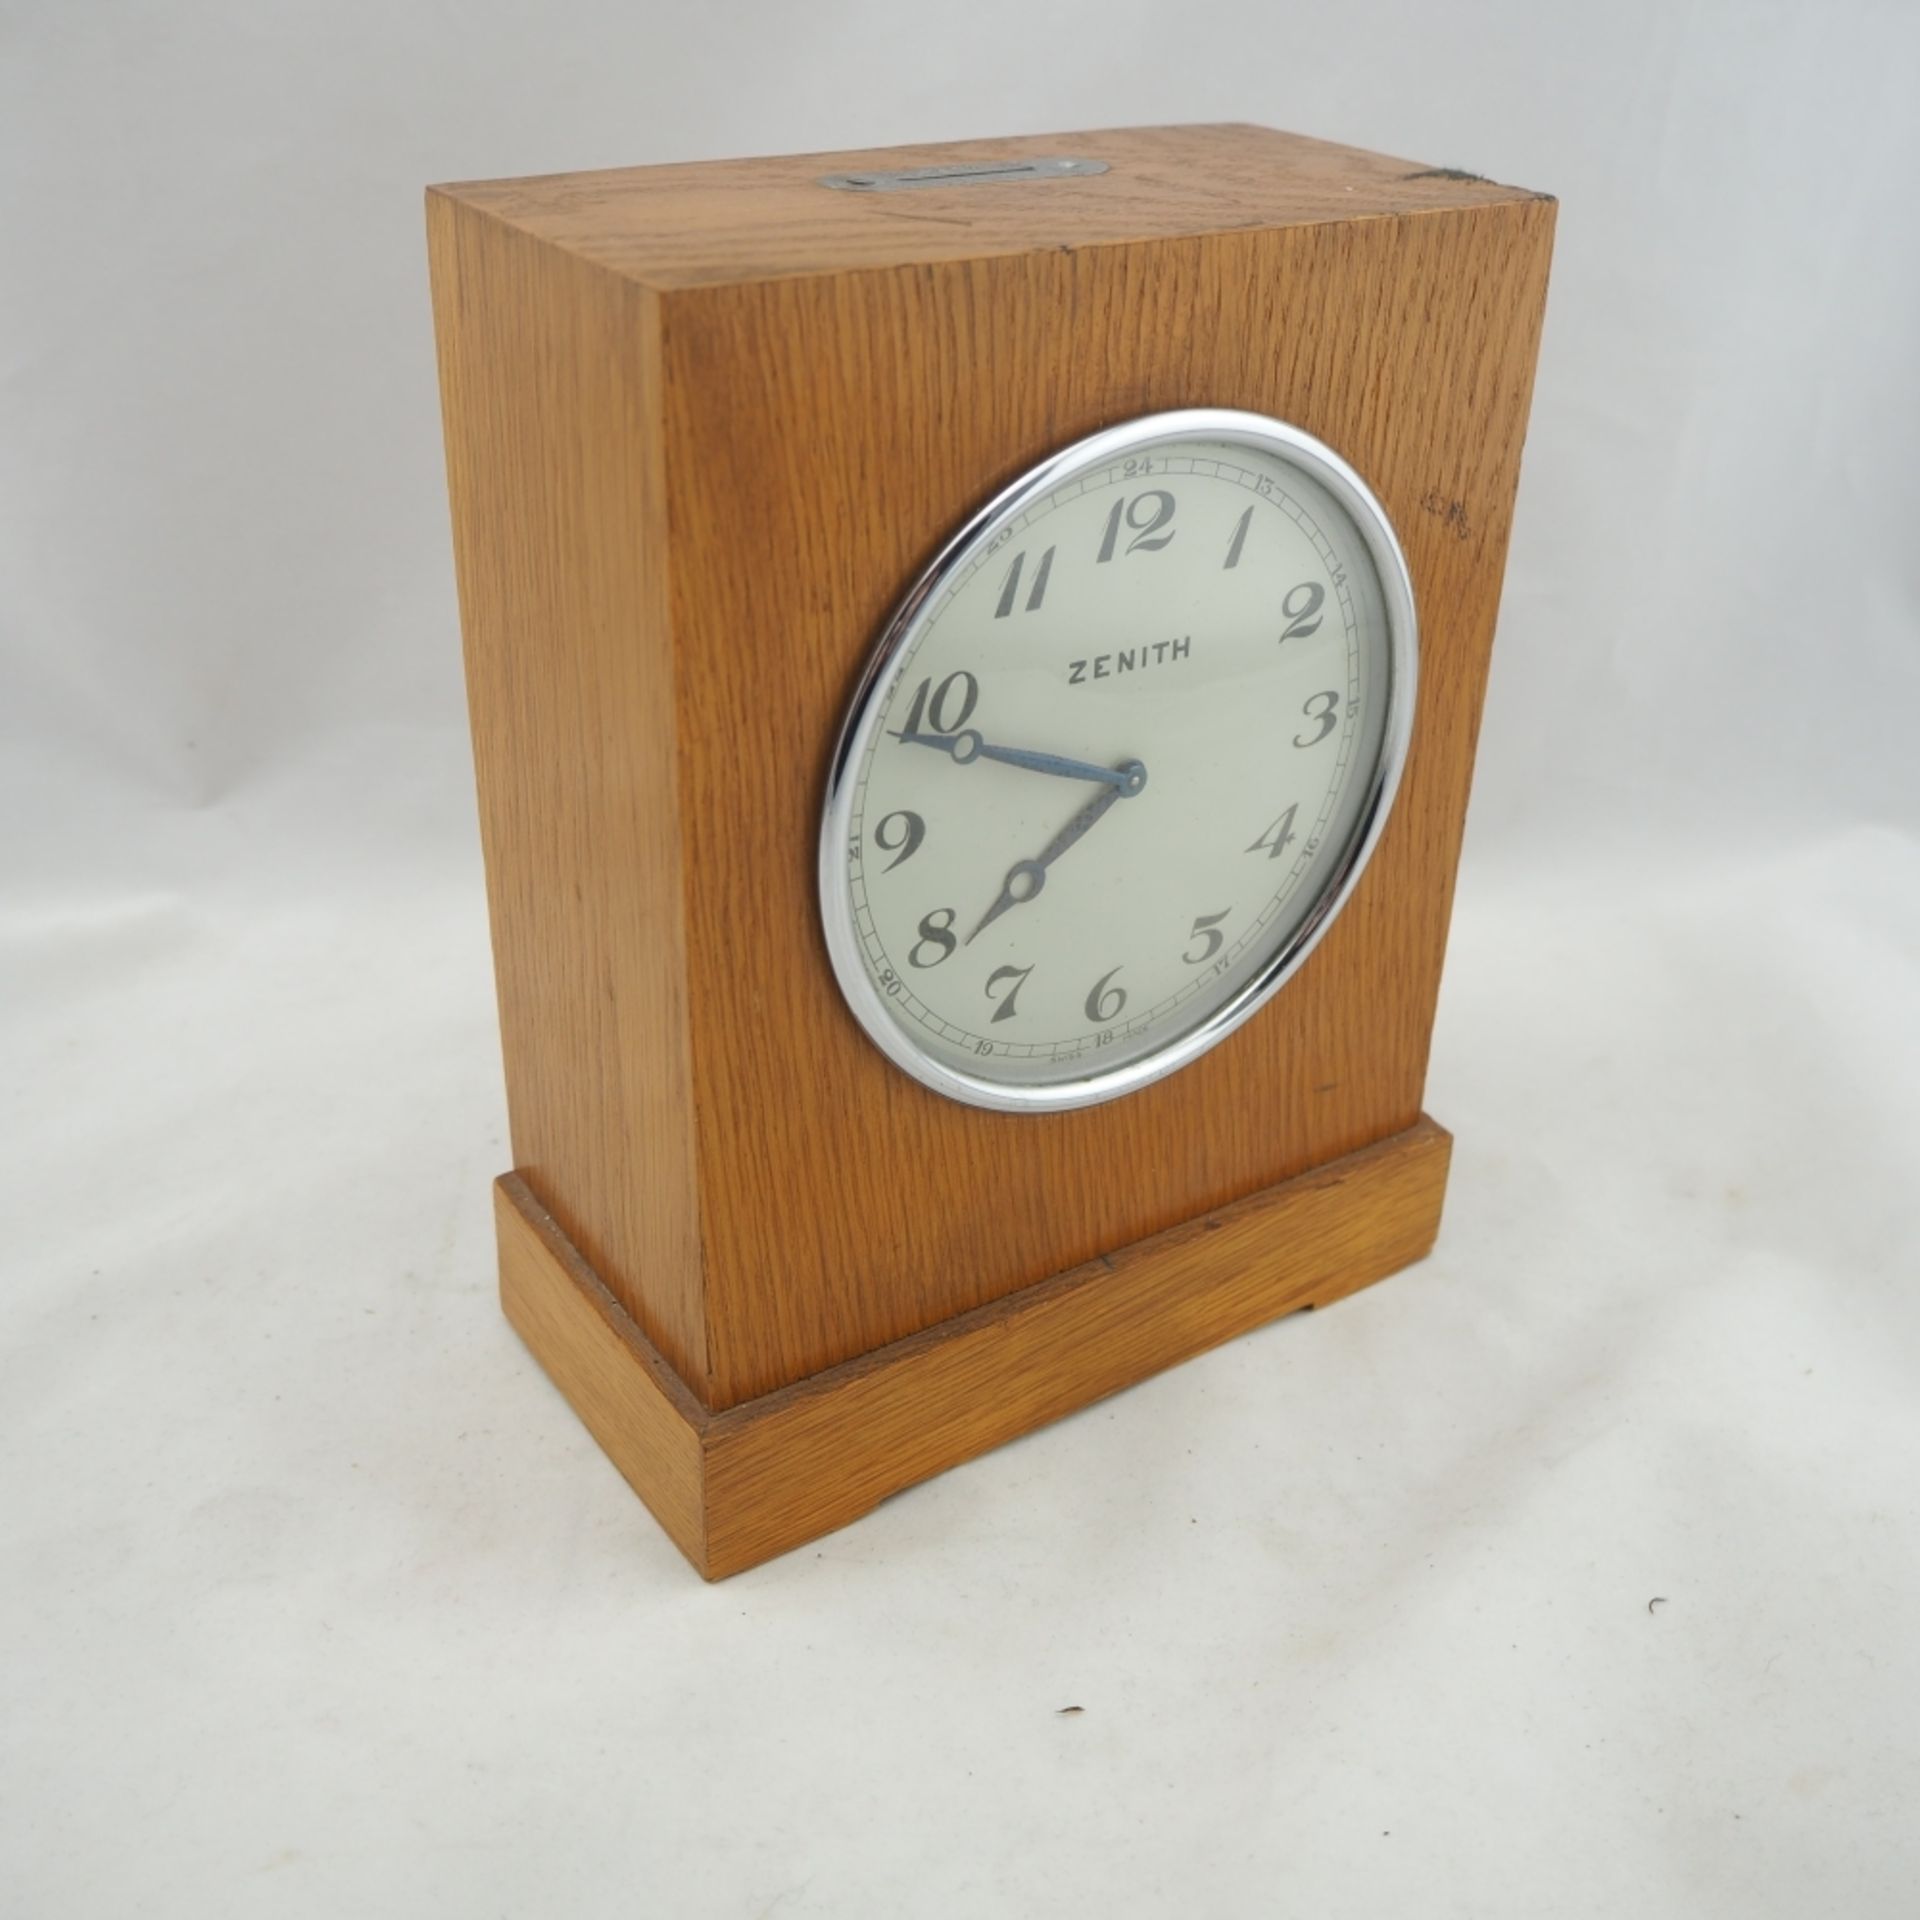 Seltene "Zenith" Spareruhr, 30er JahreGehäuse aus Holz (Eiche), mittig eingebautes Uhrwe - Bild 2 aus 5